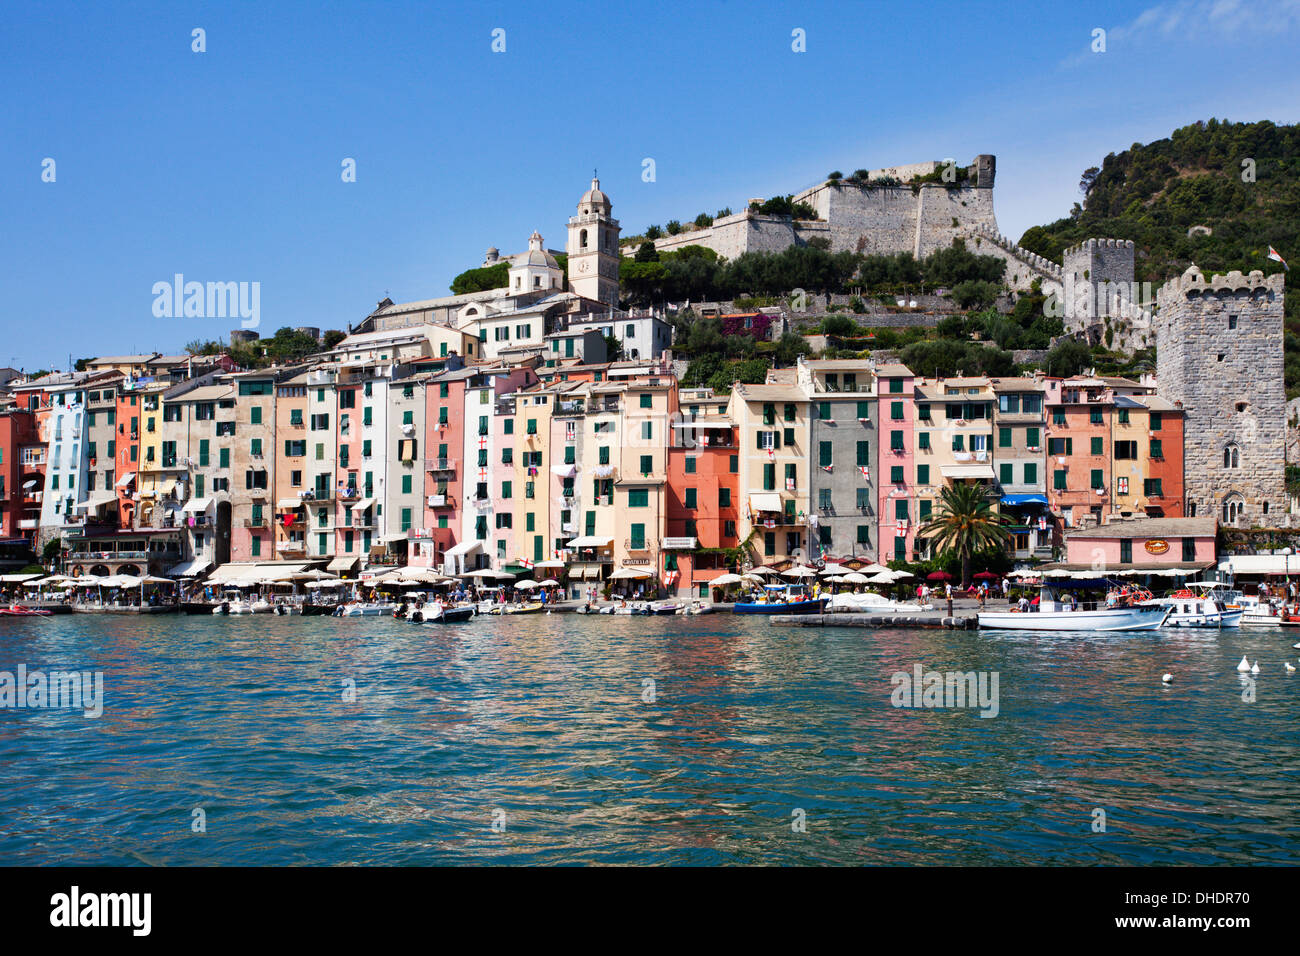 Maisons peintes de couleurs vives et des murs de la ville médiévale par la Marina de Porto Venere, Cinque Terre, l'UNESCO, ligurie, italie Banque D'Images